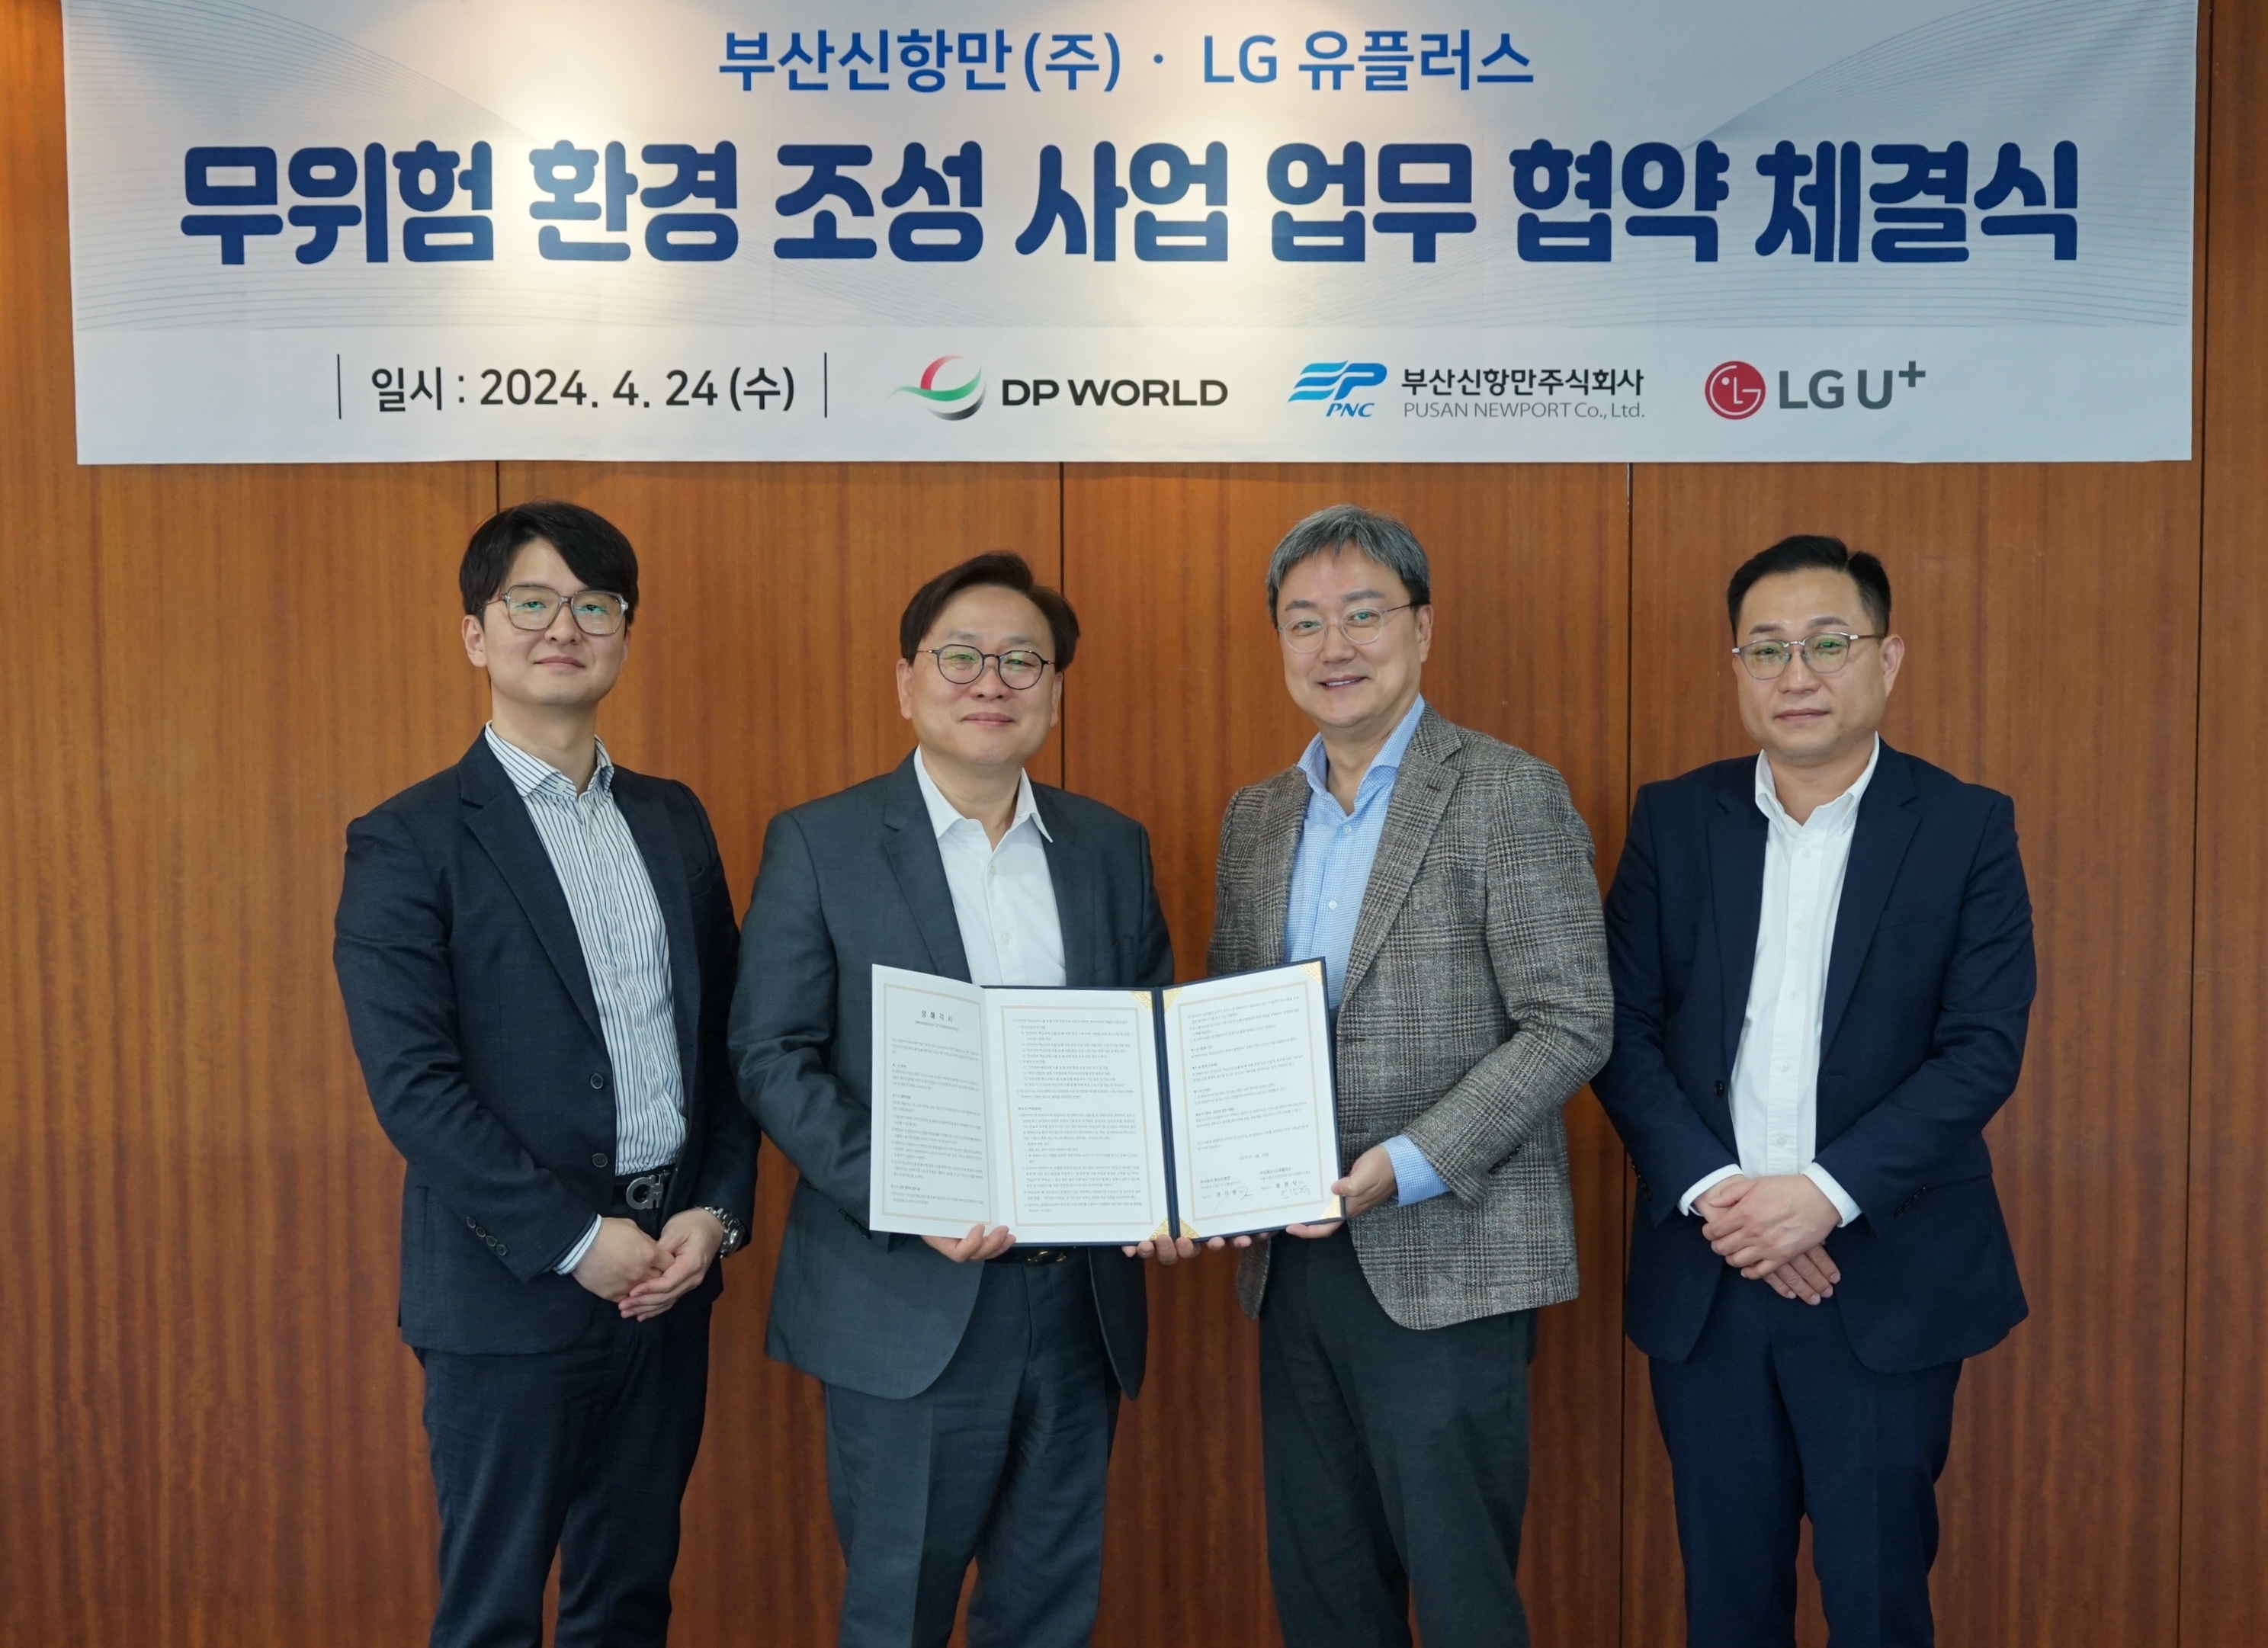 LG유플러스는 부산신항만주식회사와 항만 작업장 내 ‘무재해’ 환경 조성을 위한 업무협약을 체결했다. / 사진제공=LG유플러스